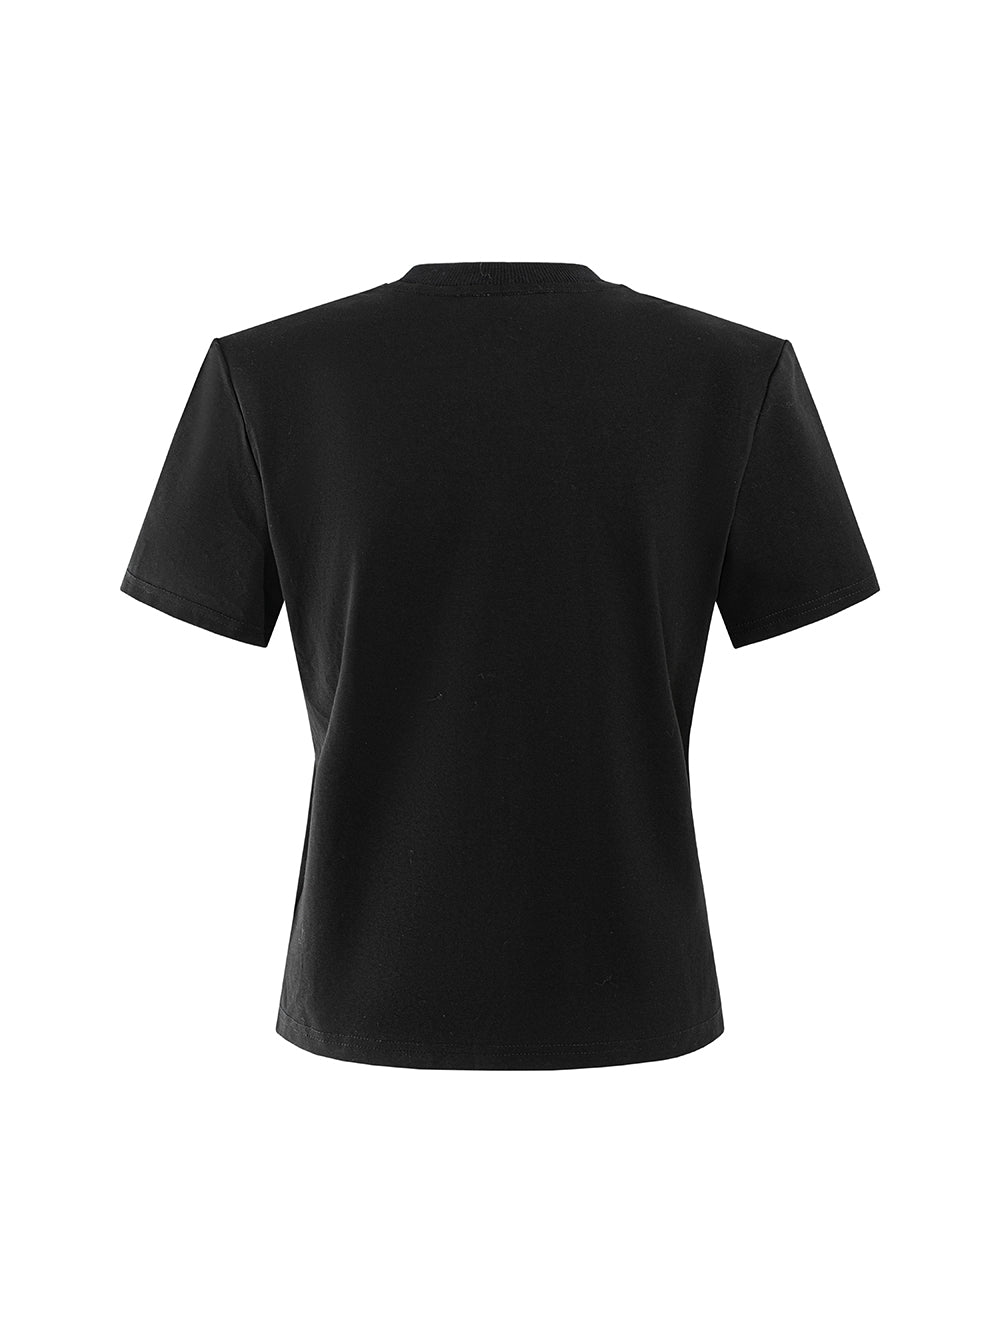 MUKZIN Stylish All-match Black Casual New T-shirts